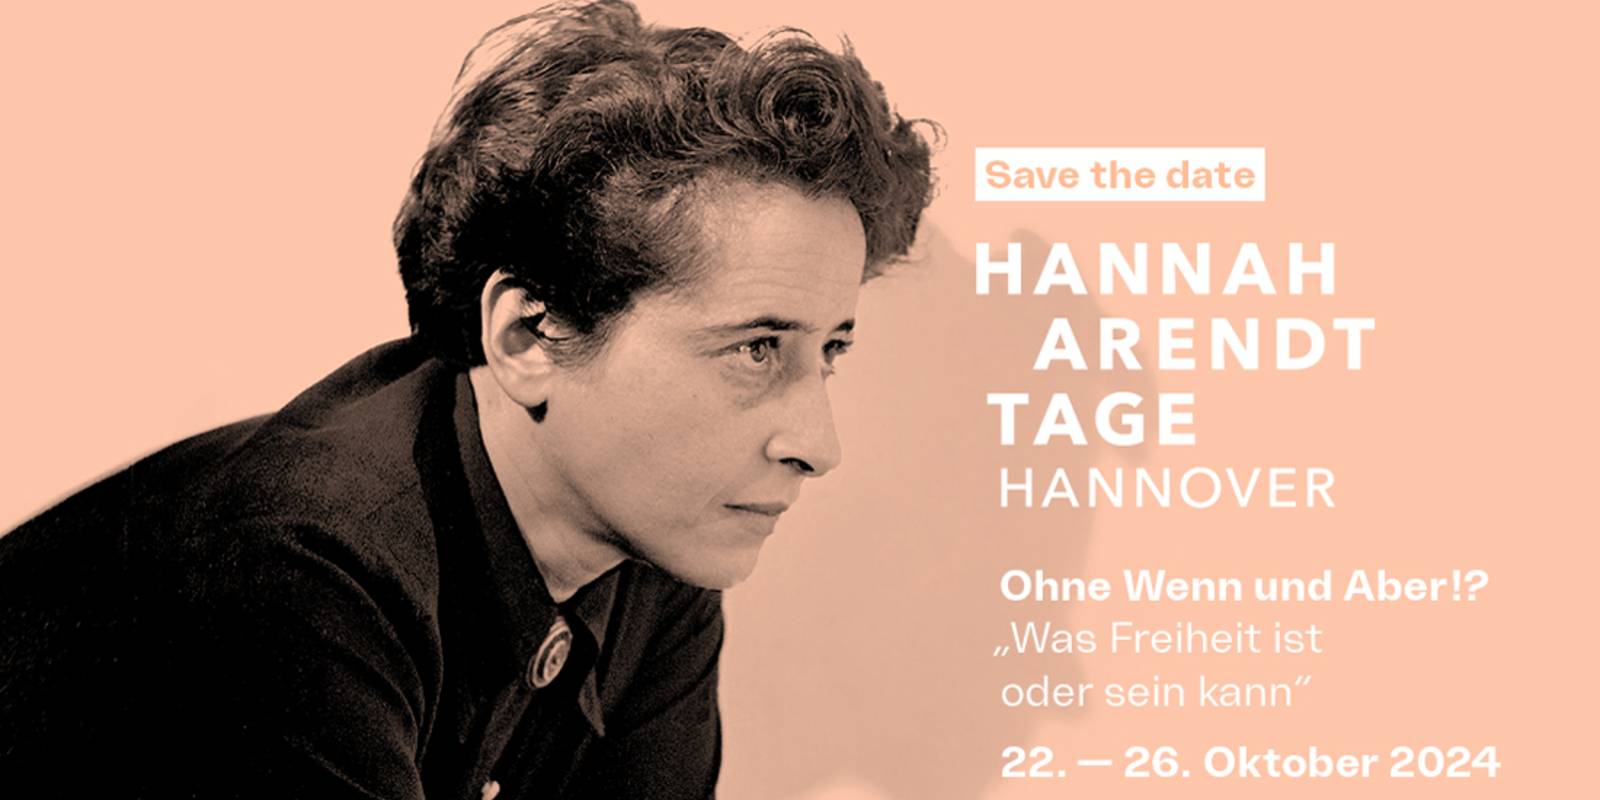 Plakat mit einem Bild von Hannah Arendt und der Aufschrift "HANNAH ARENDT TAGE HANNOVER"